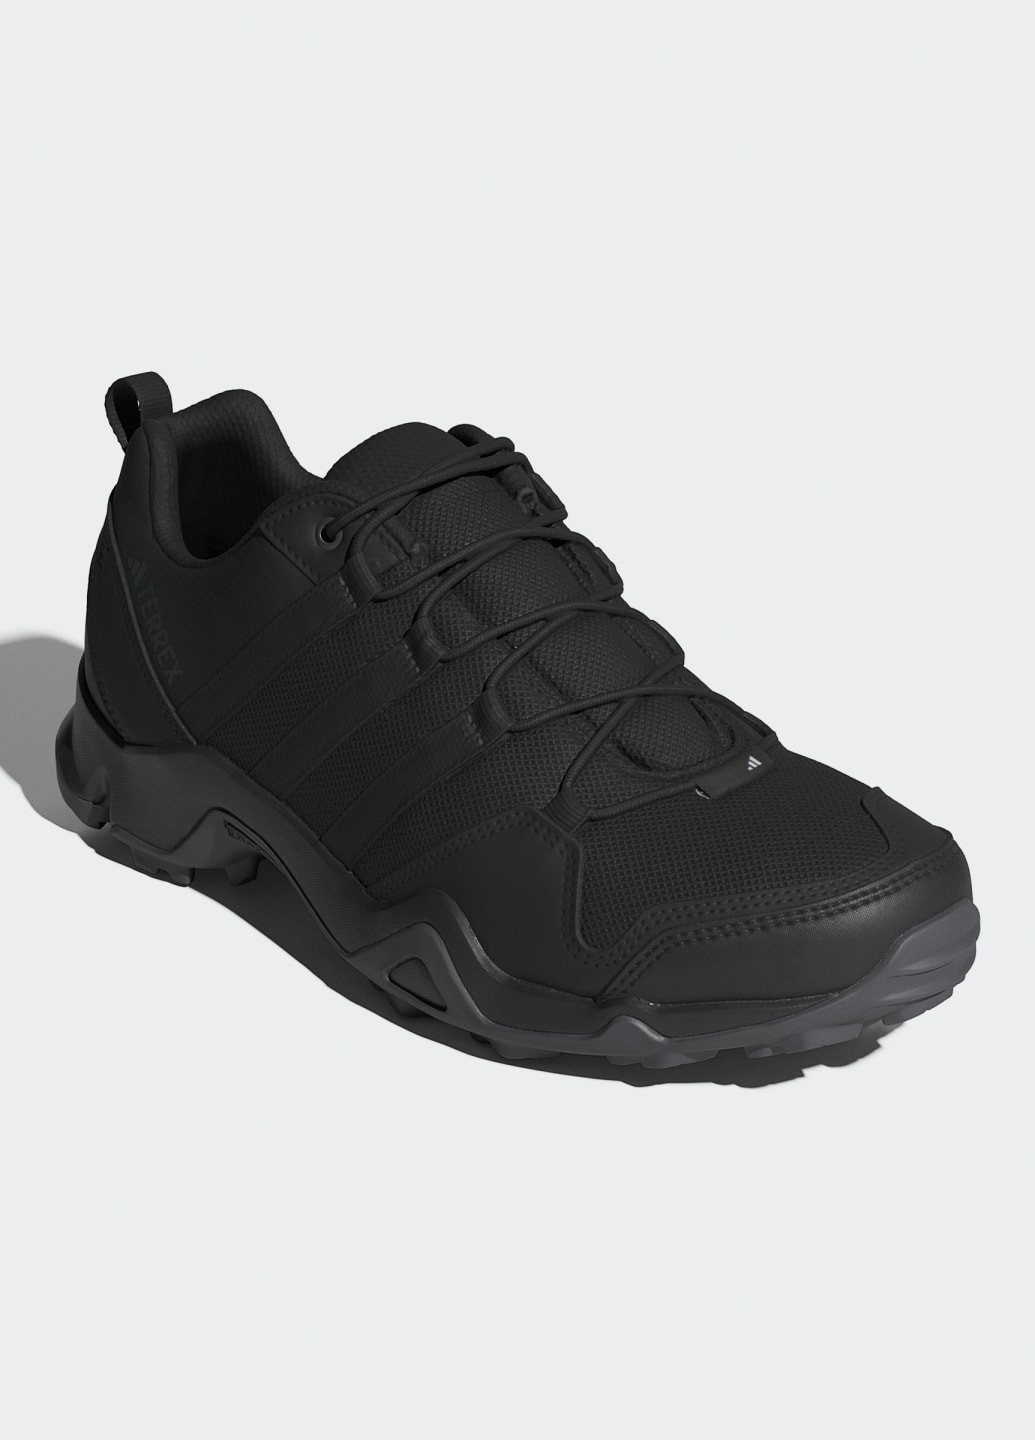 Черные всесезонные кроссовки для хайкинга ax2s adidas